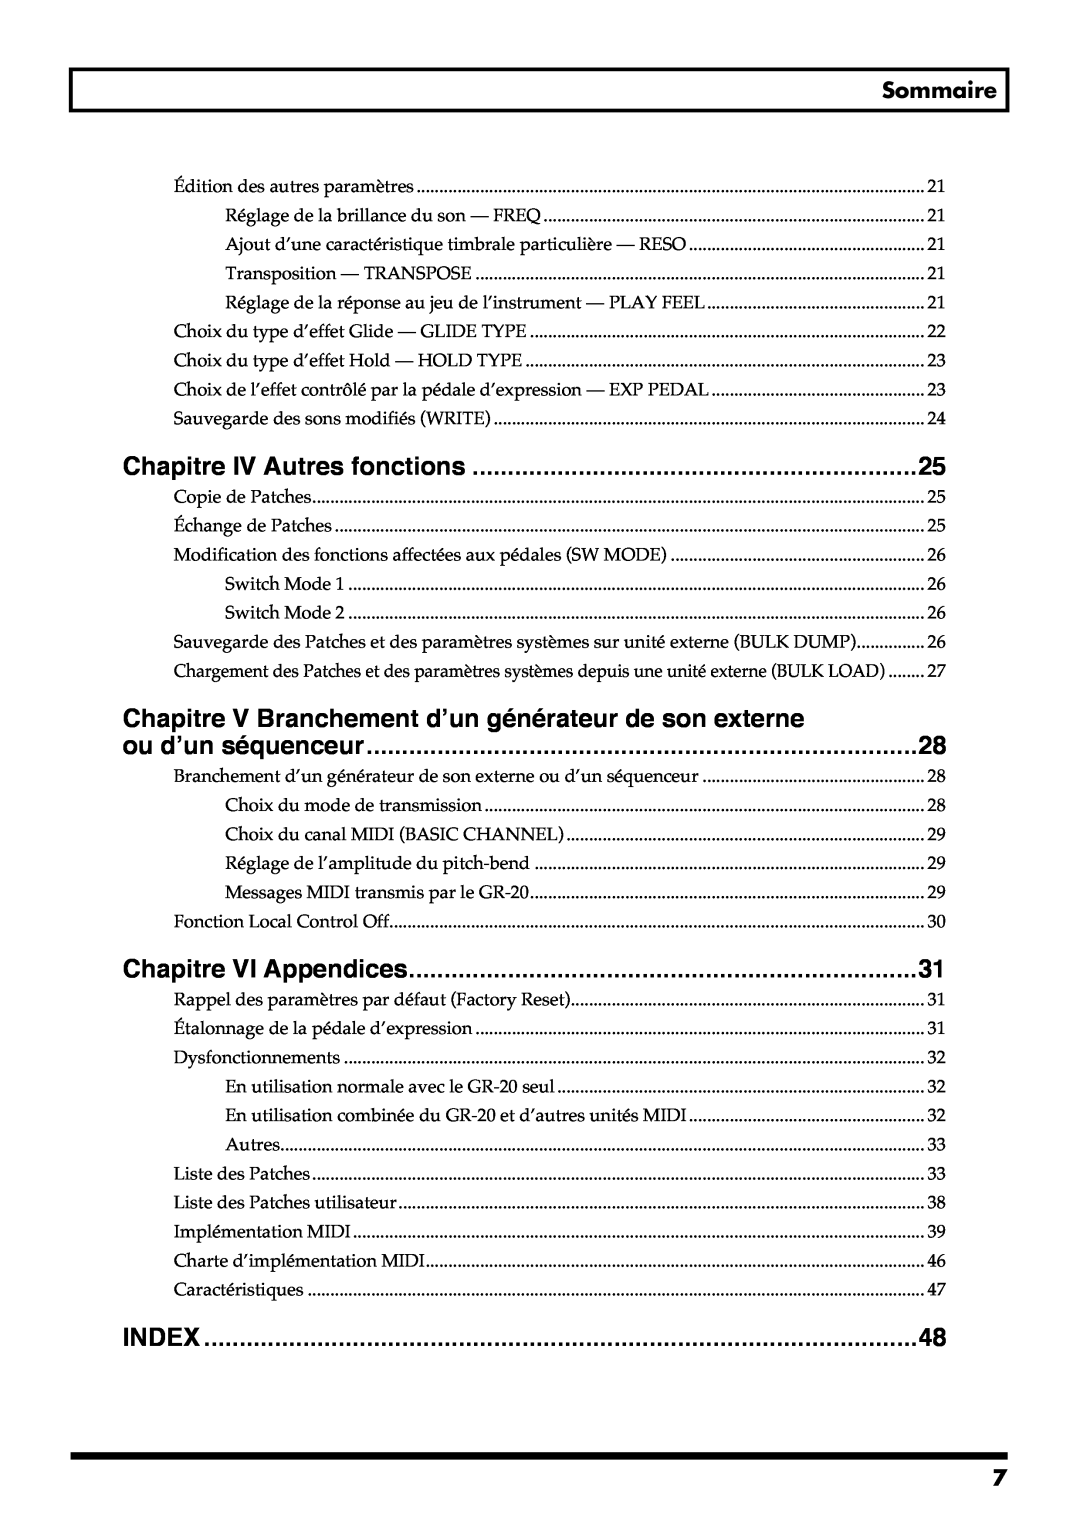 Roland GR-20 manual Chapitre IV Autres fonctions, ou d’un séquenceur, Chapitre VI Appendices, Index, Sommaire 